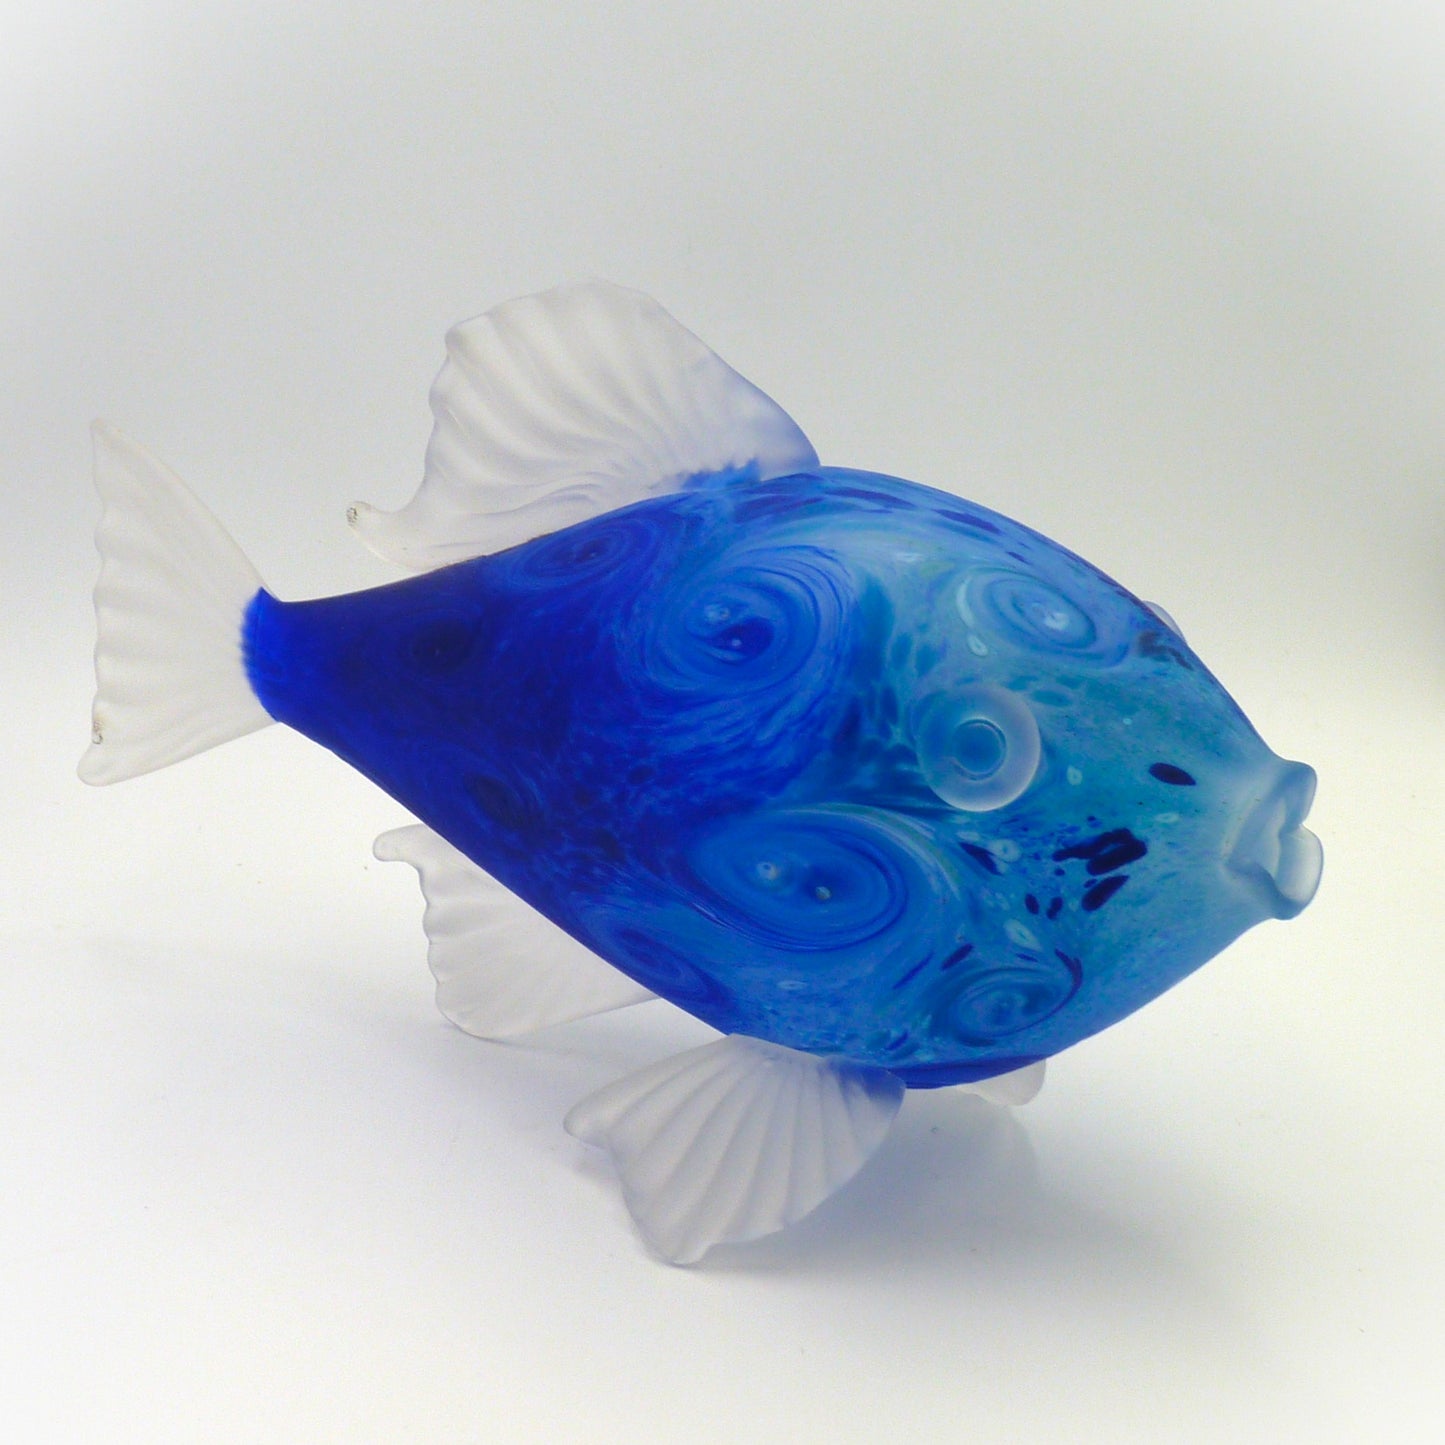 Belleau Fish Large Blue Starry